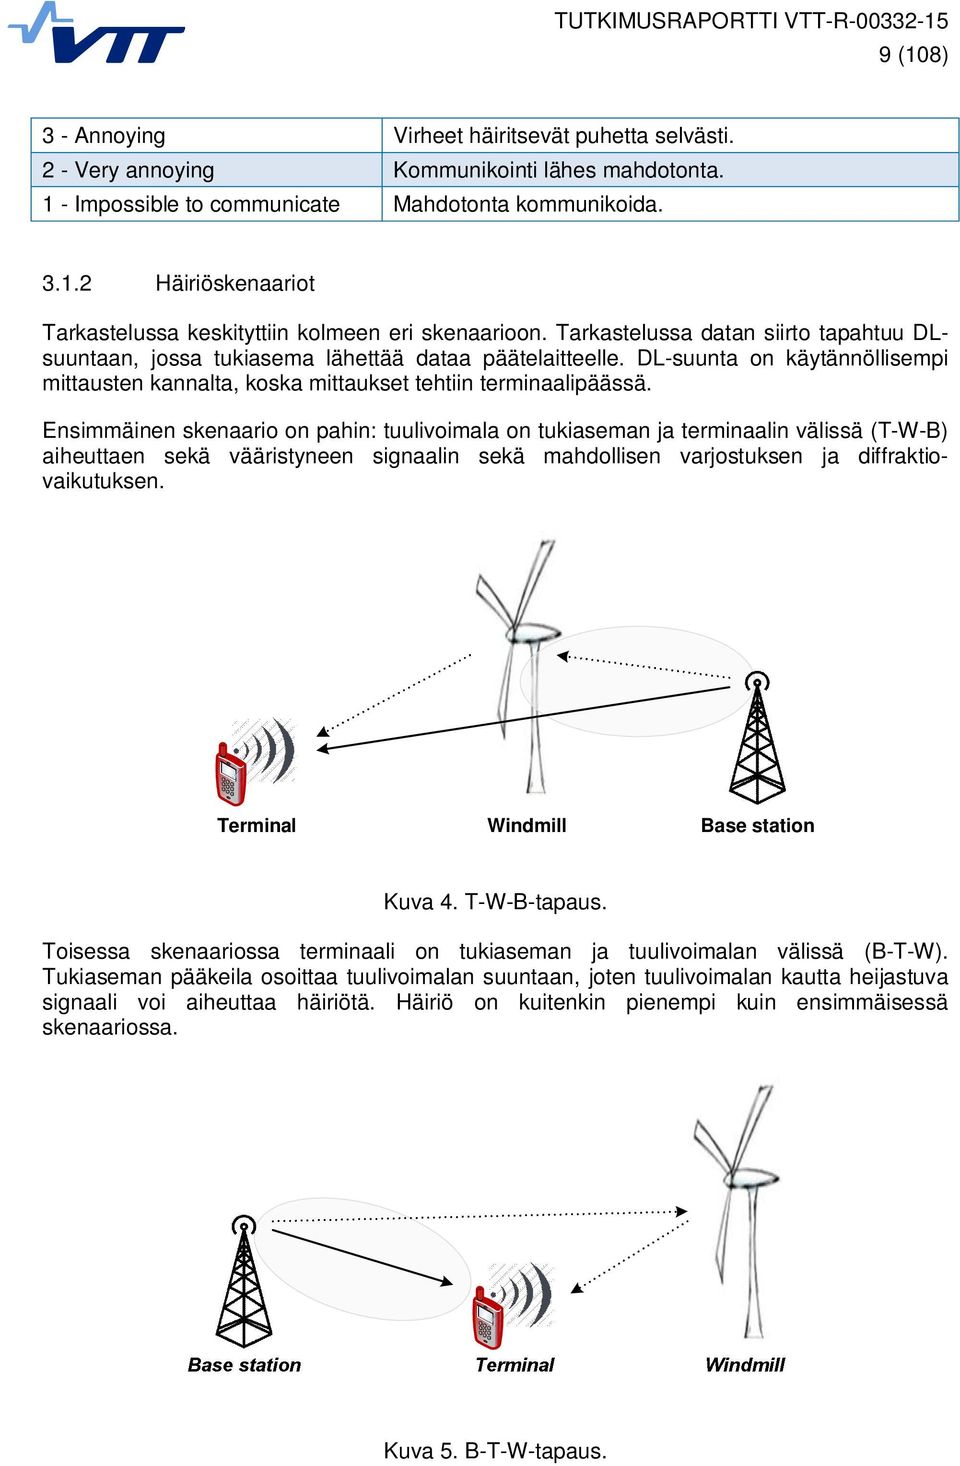 Ensimmäinen skenaario on pahin: tuulivoimala on tukiaseman ja terminaalin välissä (T-W-B) aiheuttaen sekä vääristyneen signaalin sekä mahdollisen varjostuksen ja diffraktiovaikutuksen.